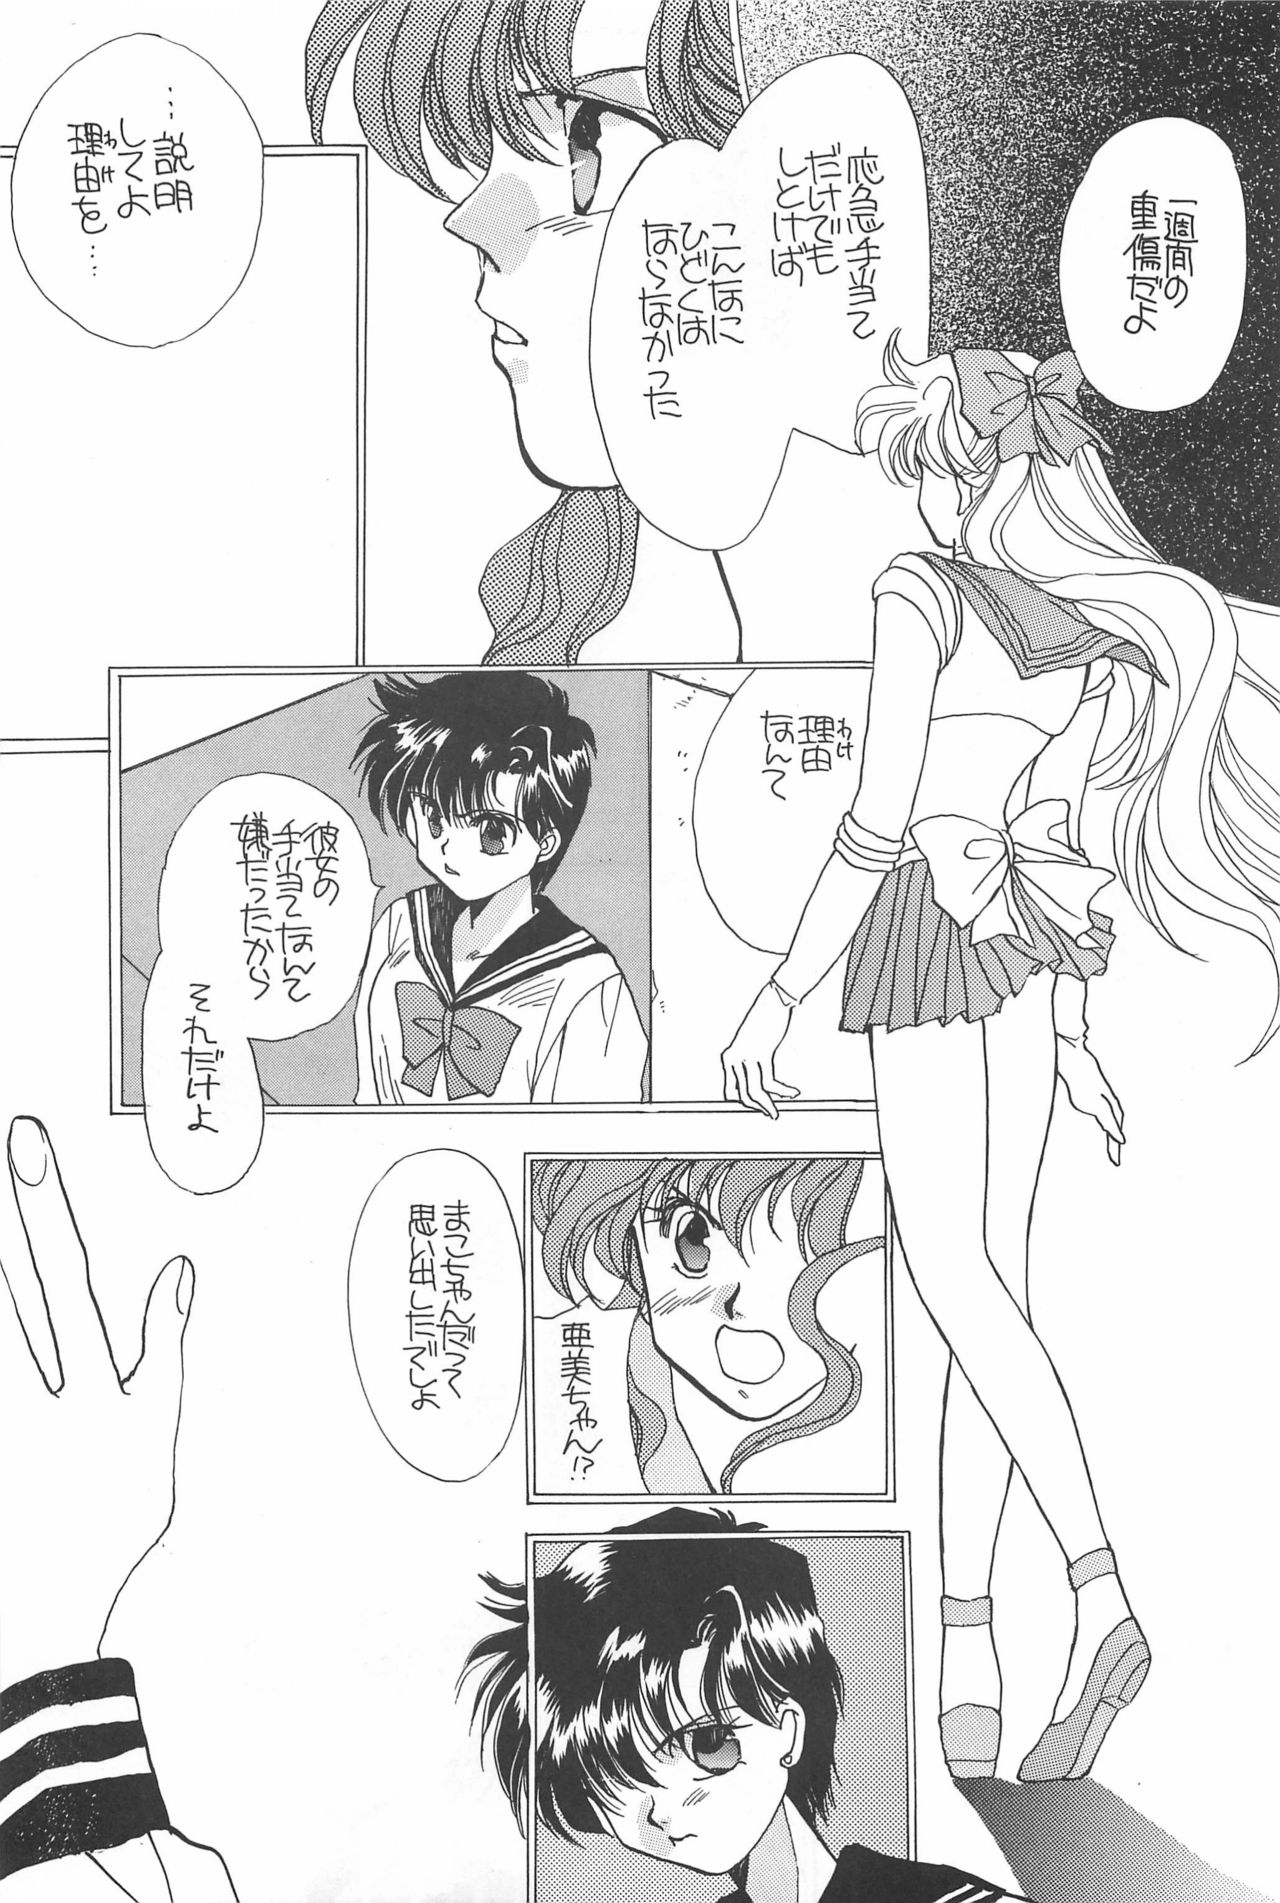 [Hello World (Muttri Moony)] Kaze no You ni Yume no You ni - Sailor Moon Collection (Sailor Moon) 166